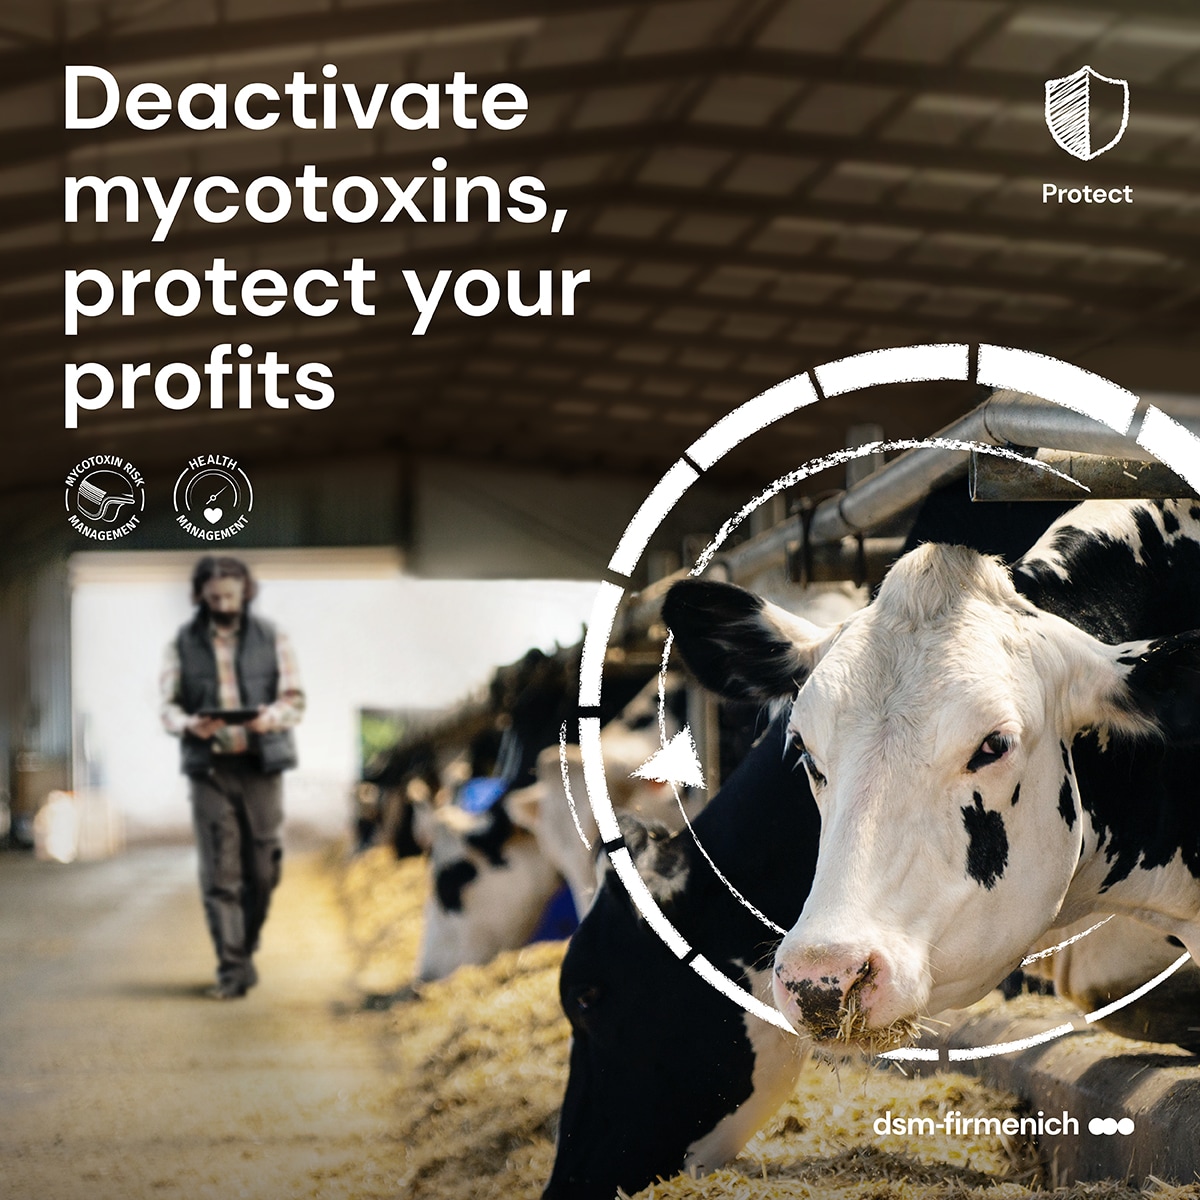 Deactivate mycotoxins, protect your profits